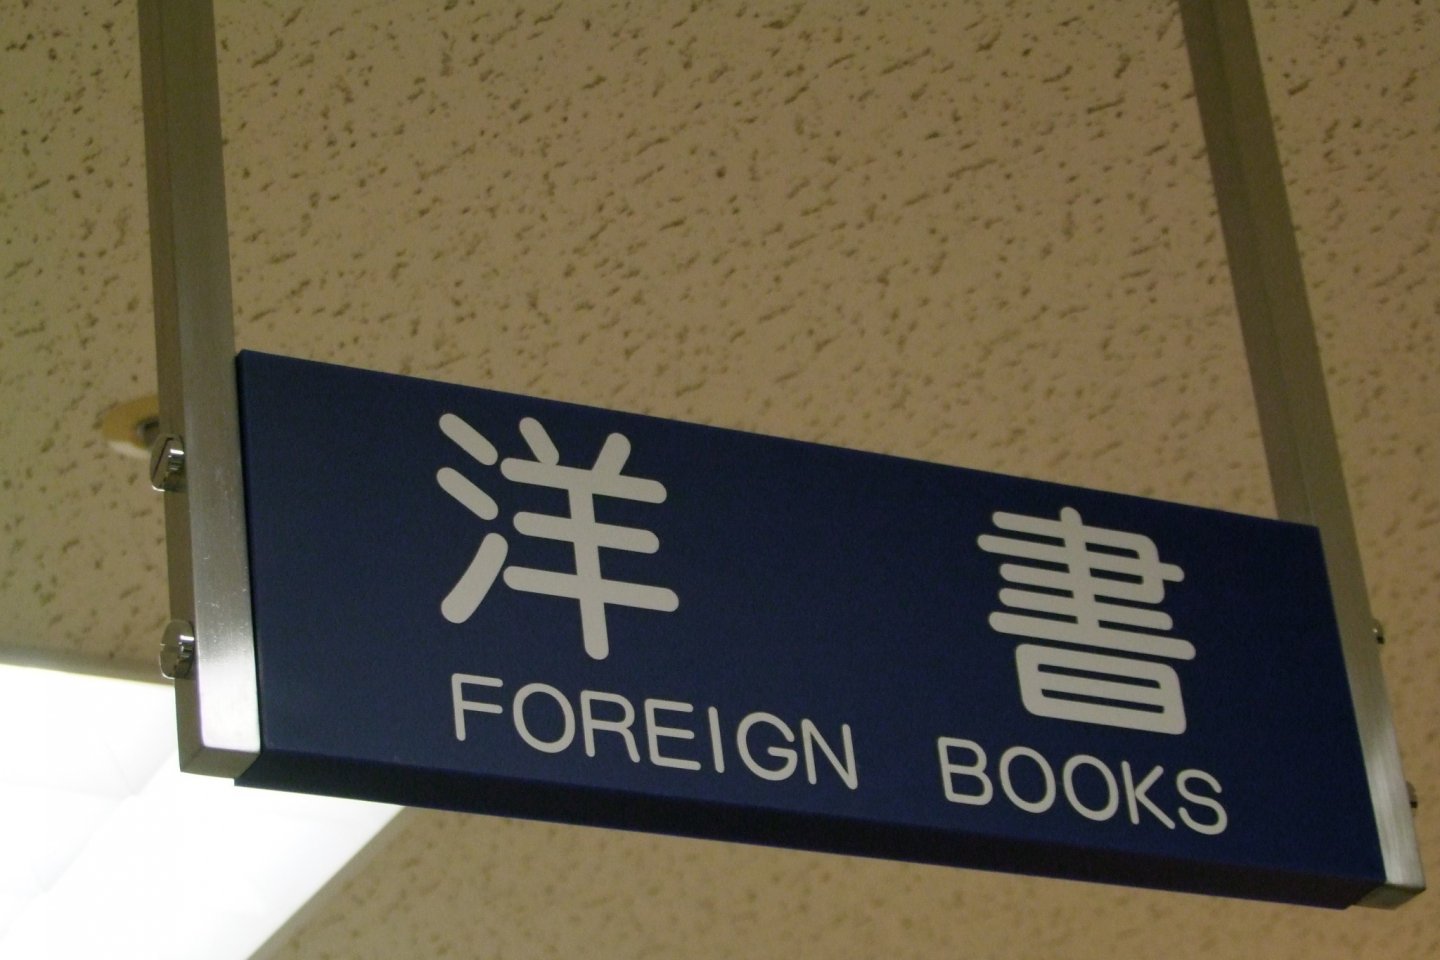 Papan penunjuk bagian buku-buku impor di salah satu toko buku